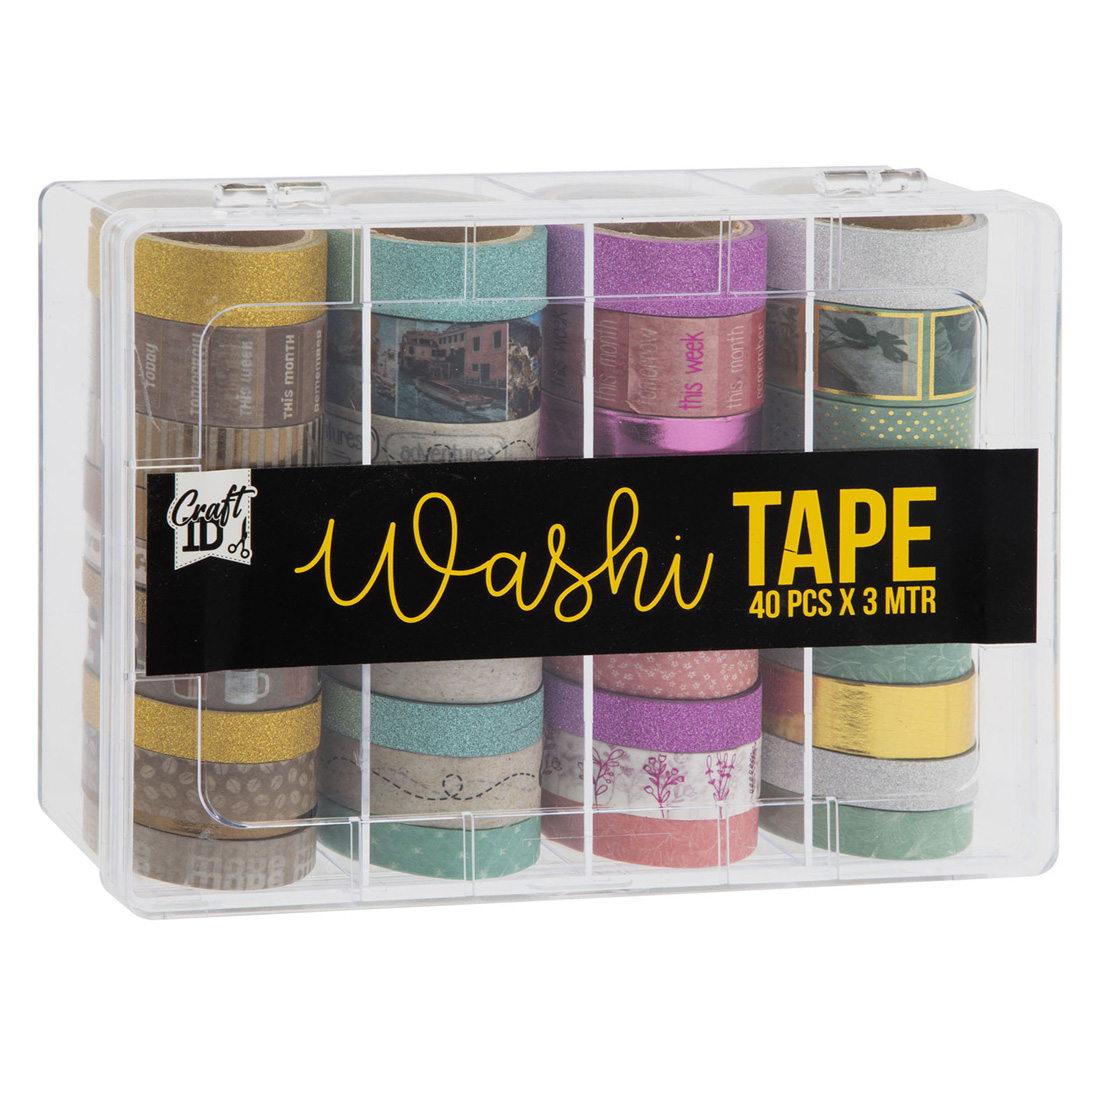 Craft Sensations Washi Tape 40 rollen van elk 3 meter | 2023 Editie | Decoratieve masking tape in 40 unieke ontwerpen voor handwerk, journaling, scrapbooking & meer | Plakrollen in